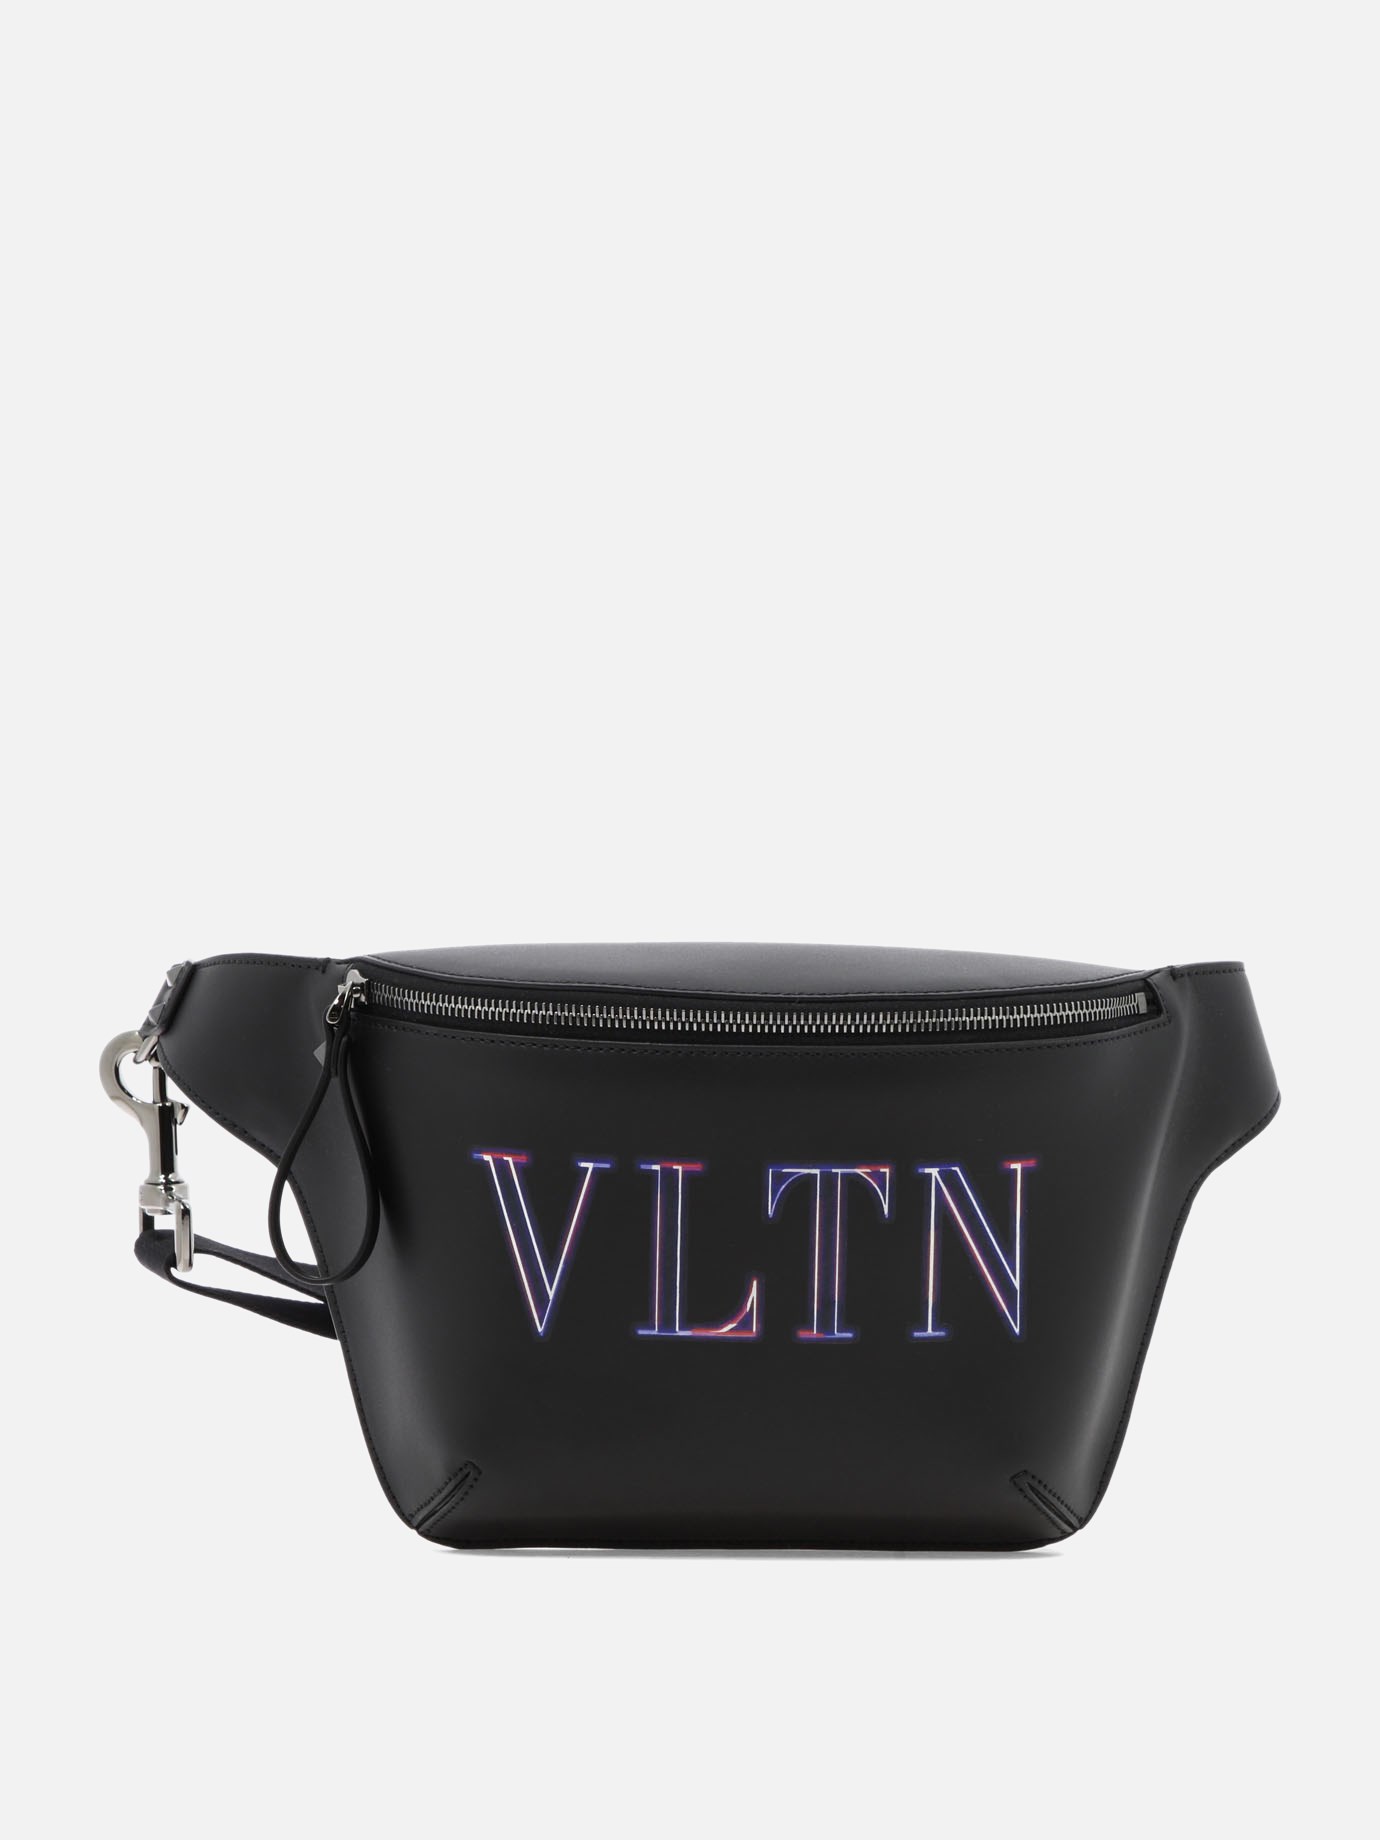  Neon VLTN  belt bagby Valentino Garavani - 2